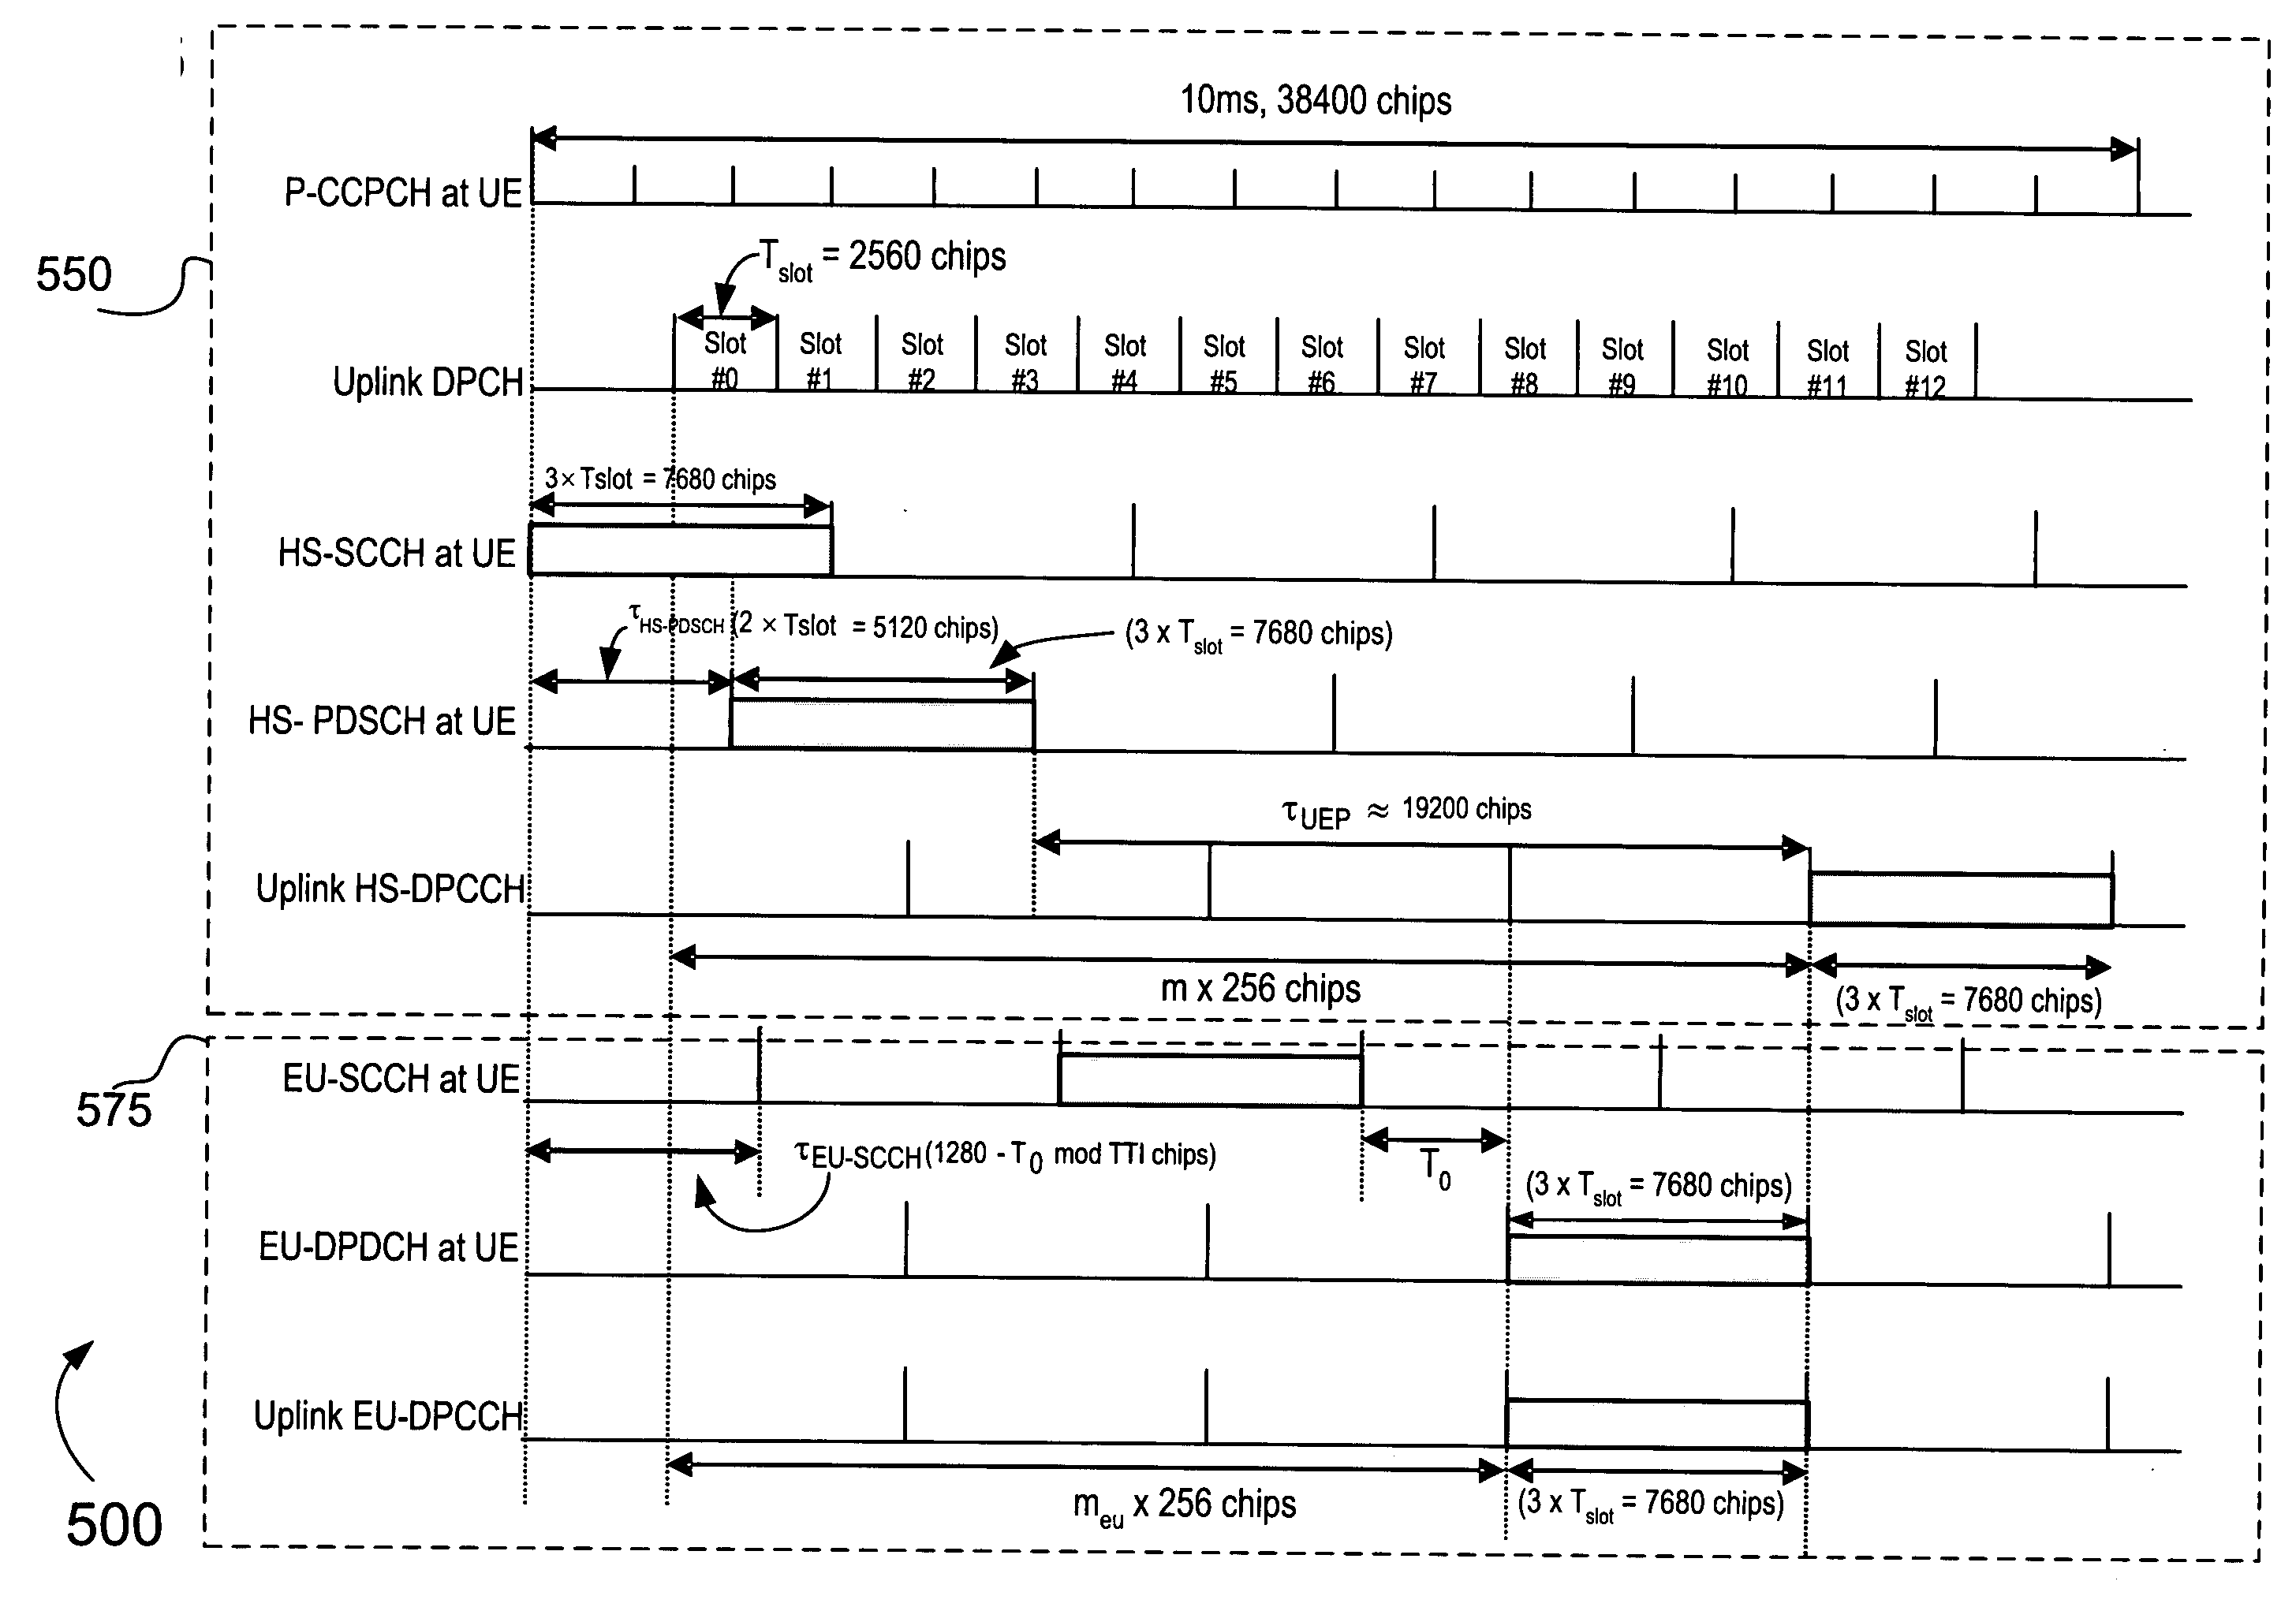 Method of aligning physical channels for uplink transmission